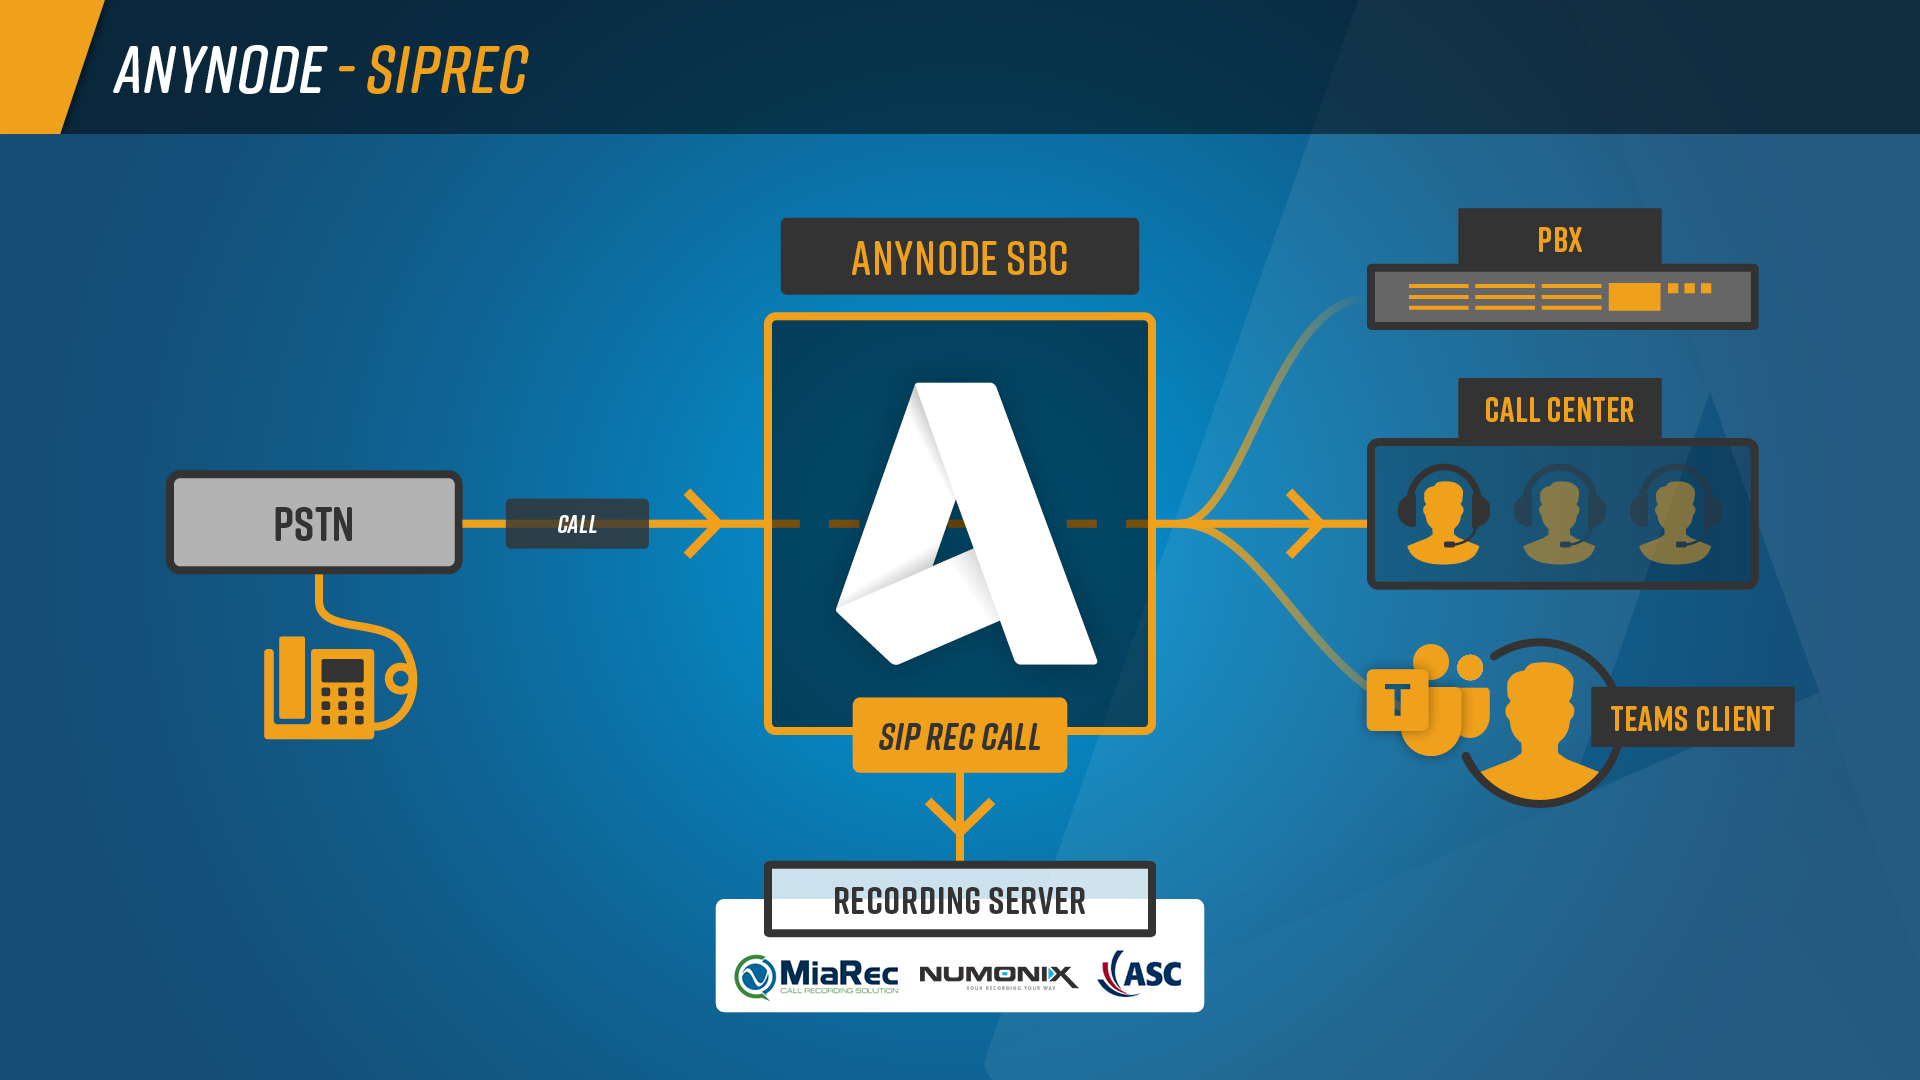 Infografía: anynode SIPREC con una llamada SIP adicional a un servidor de grabación, por ejemplo, MiaRec, Numonix, ASC Technologies.